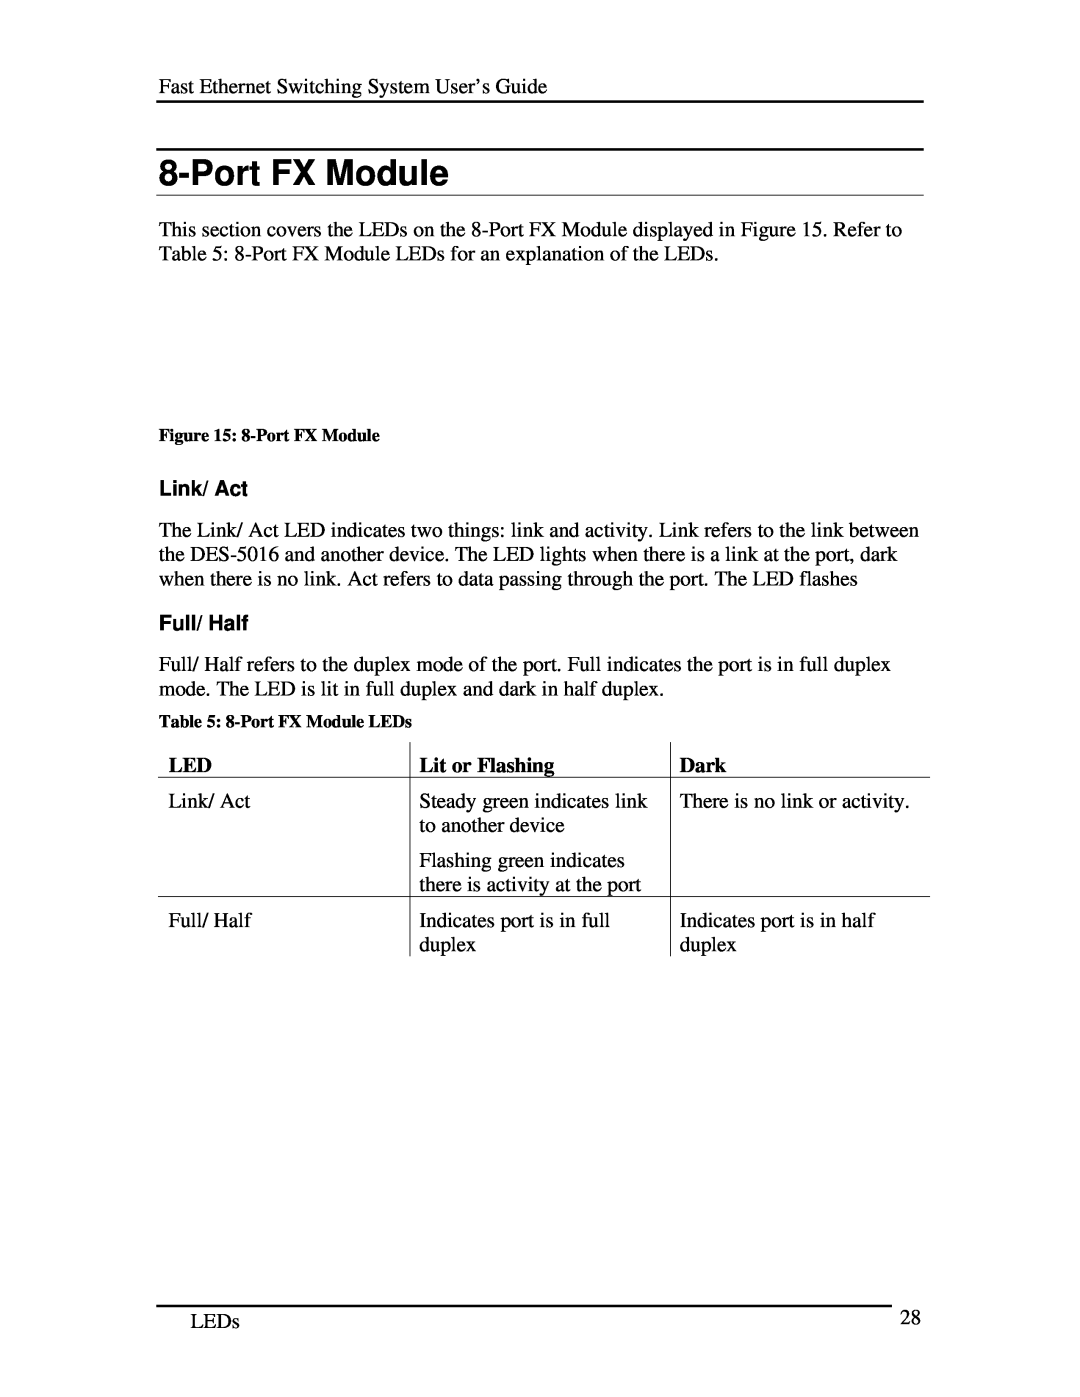 D-Link DES-5016 manual Port FX Module, Link/ Act, Lit or Flashing, Dark, Full/ Half 